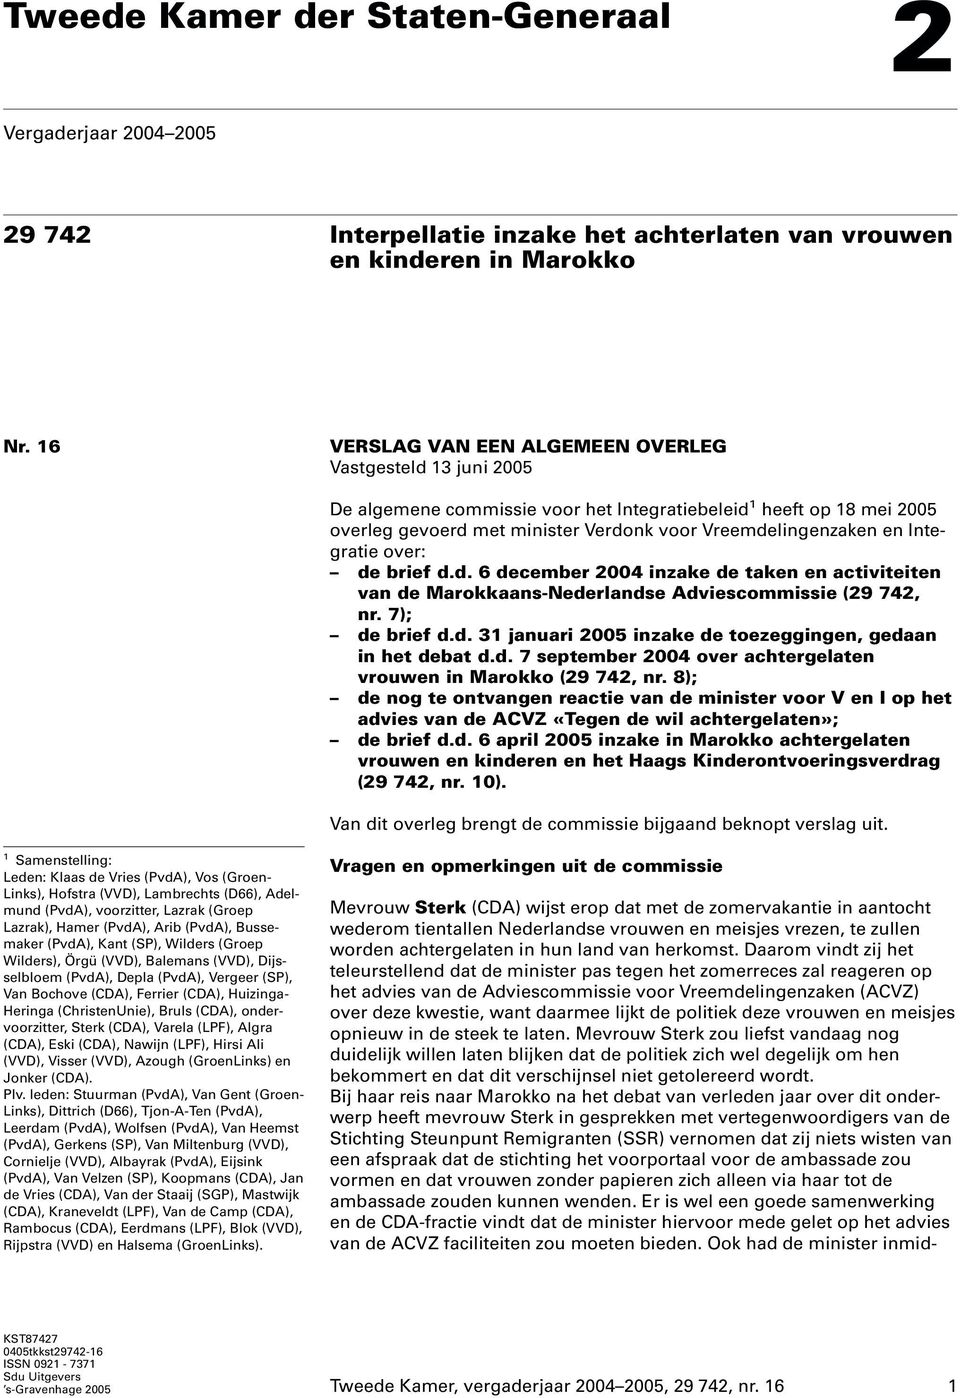 Integratie over: de brief d.d. 6 december 2004 inzake de taken en activiteiten van de Marokkaans-Nederlandse Adviescommissie (29 742, nr. 7); de brief d.d. 31 januari 2005 inzake de toezeggingen, gedaan in het debat d.